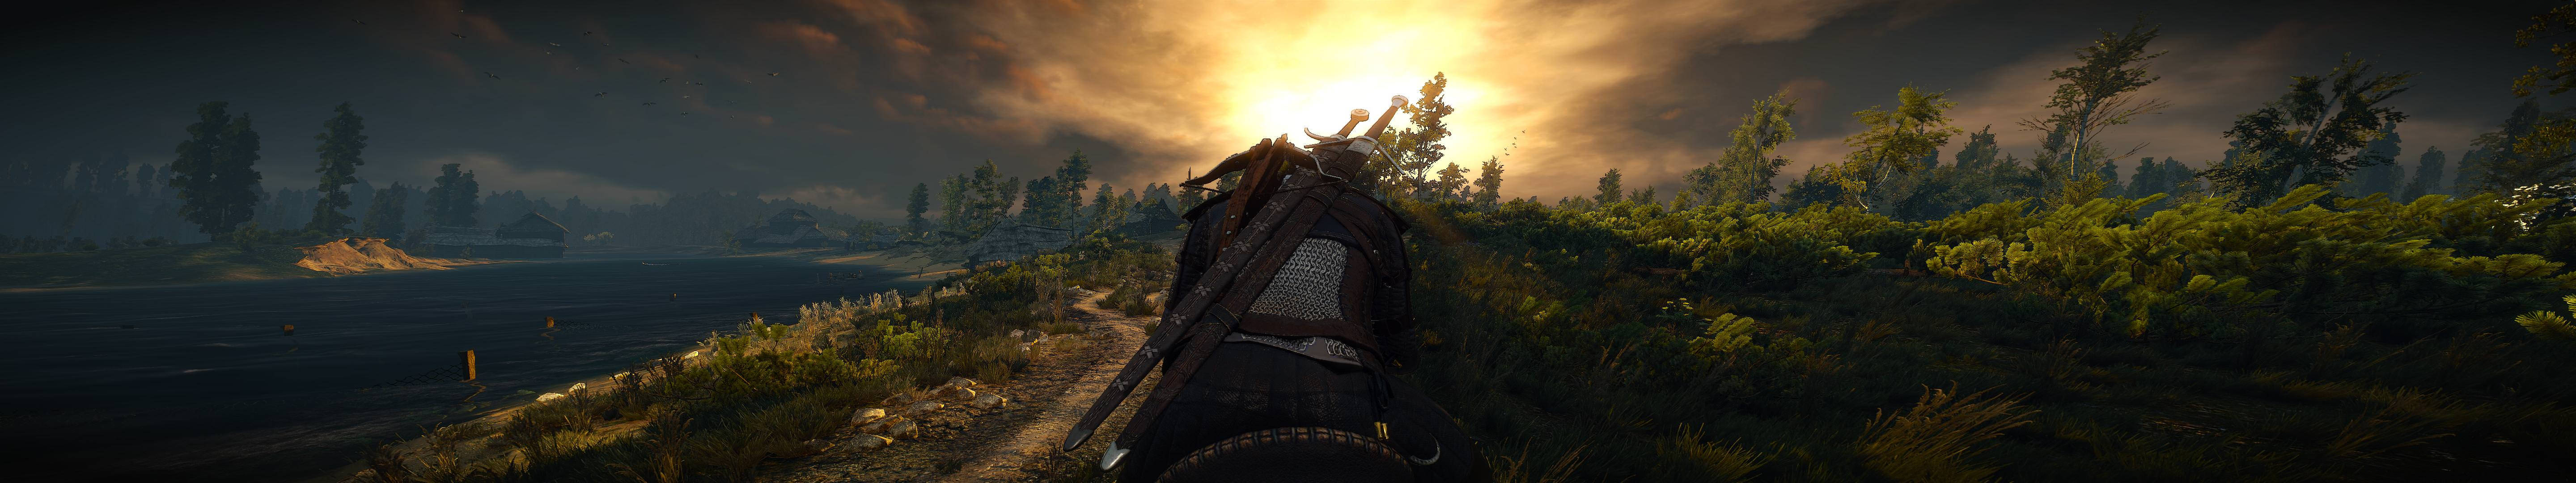 Geralt af Rivia står alene i en sovende skov ved solnedgang. Wallpaper